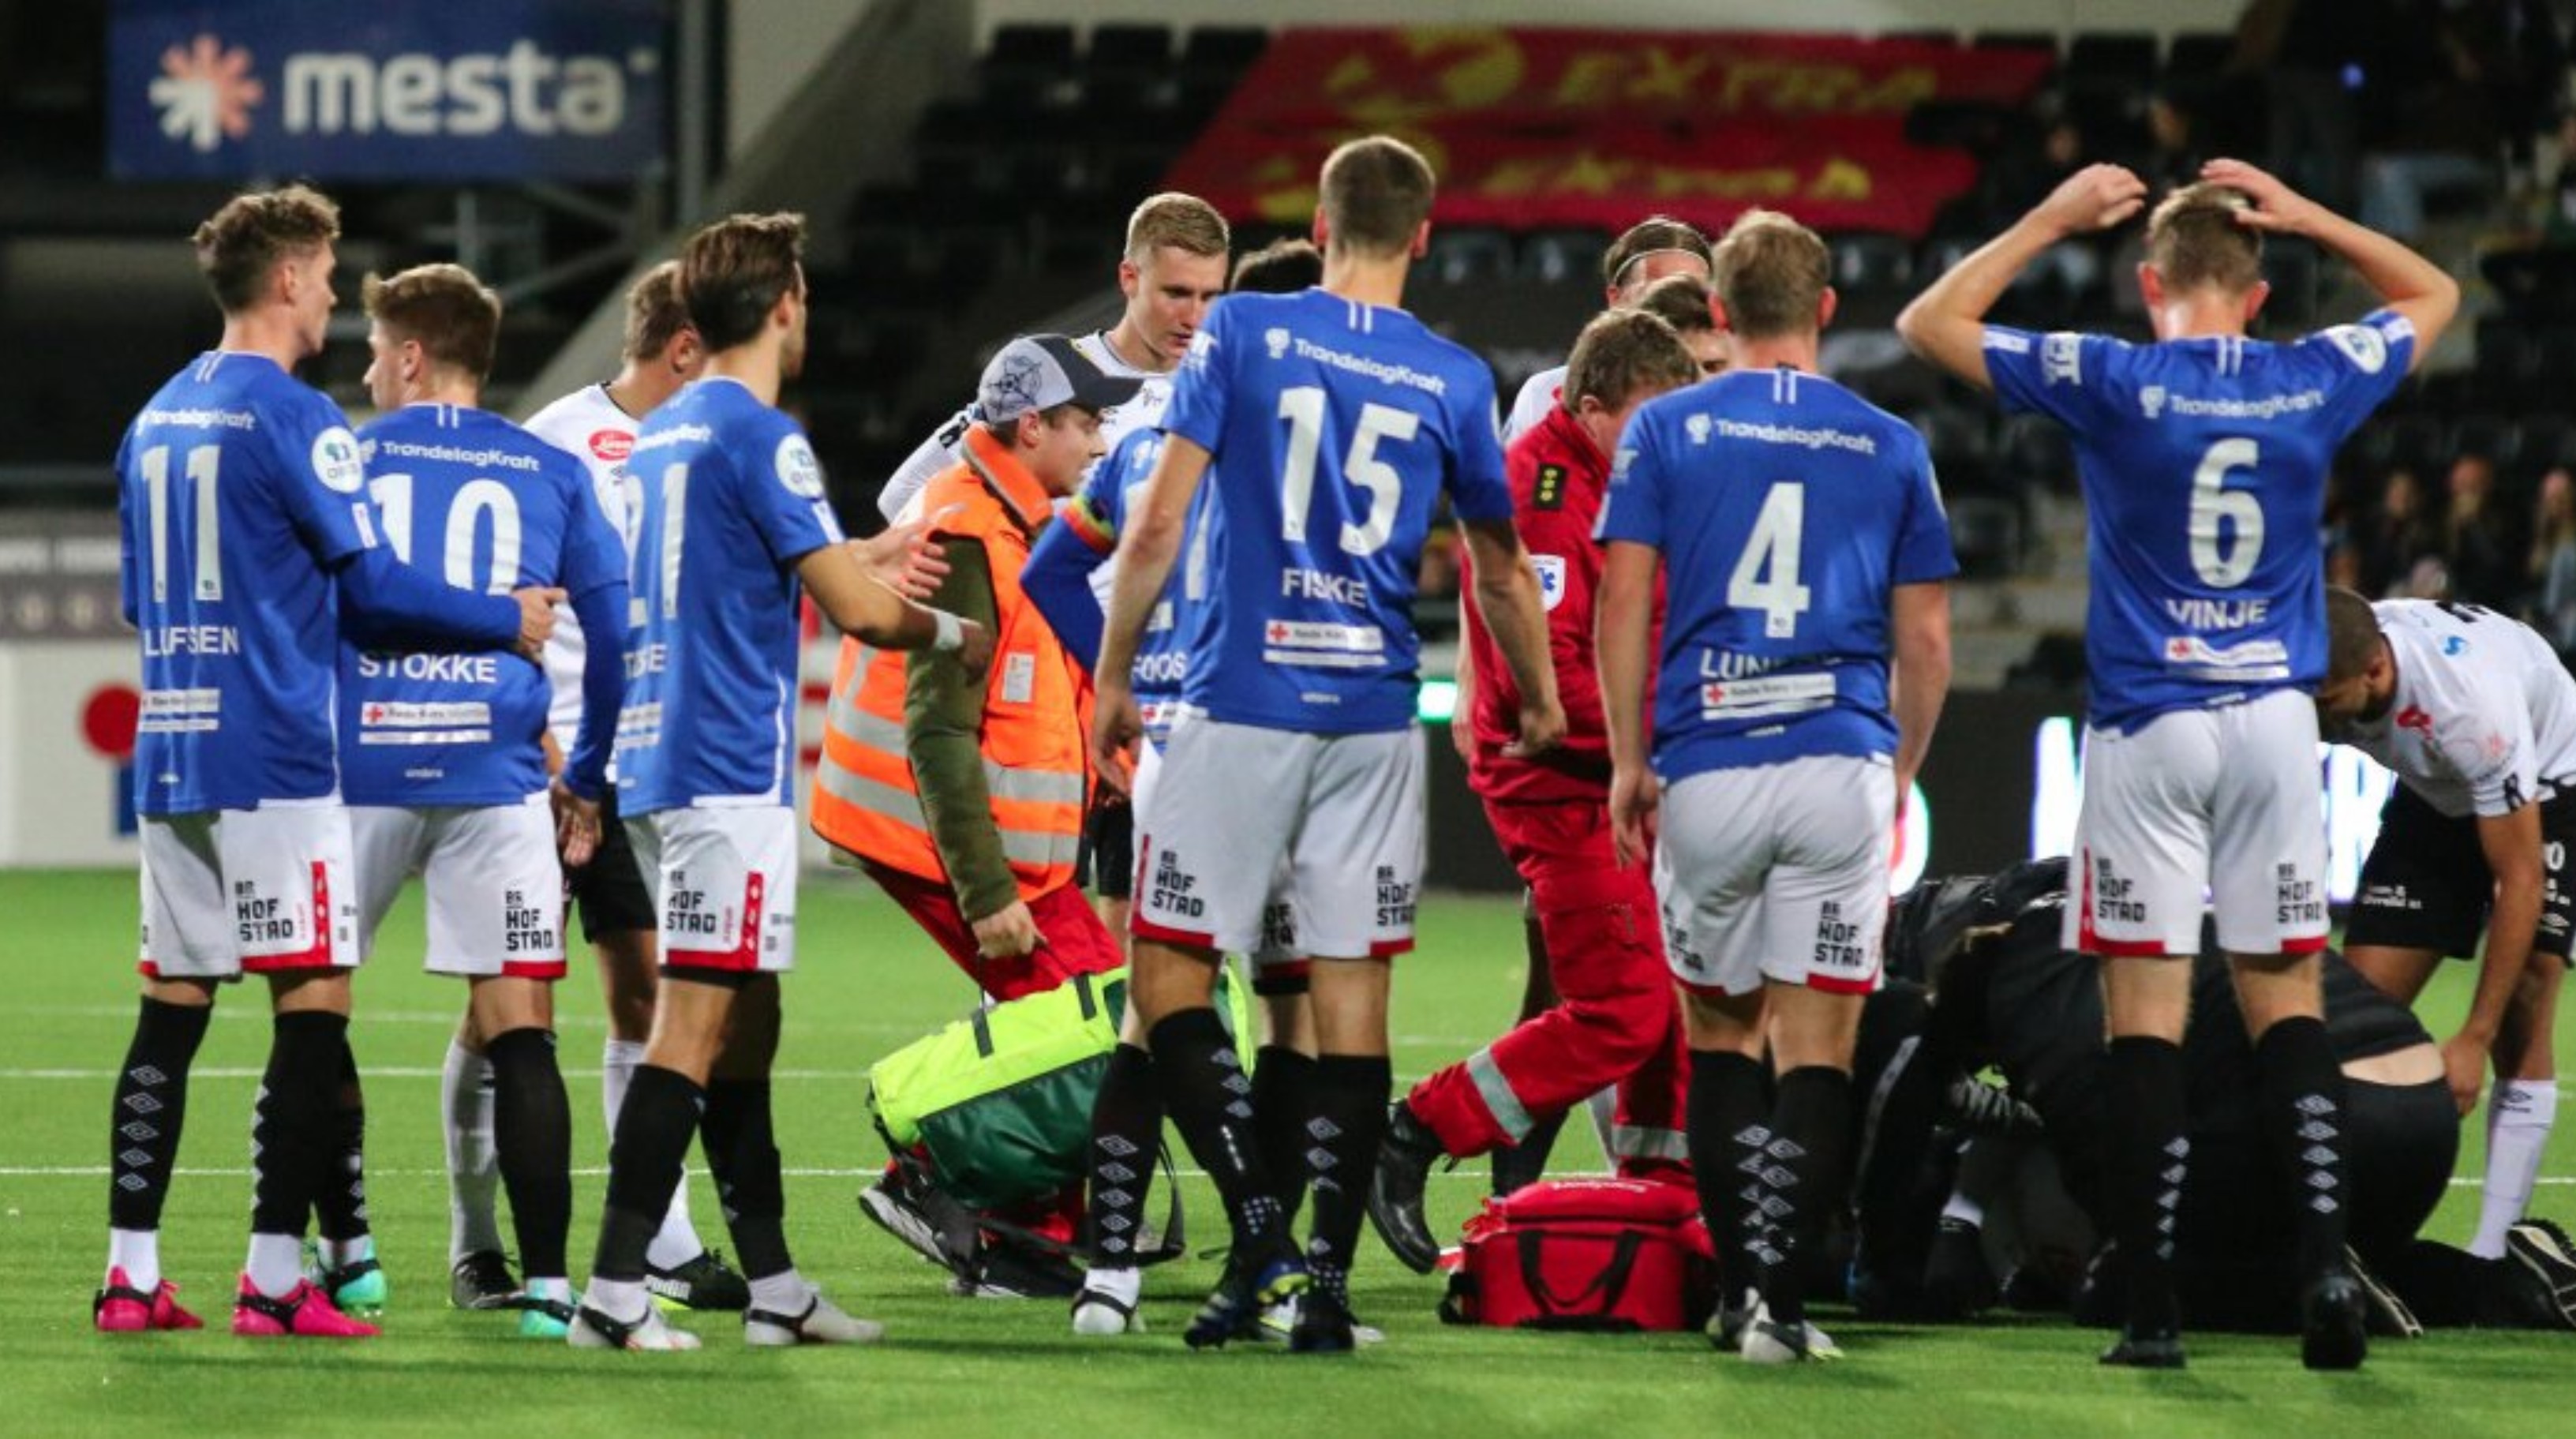 El centrocampista islandés Emil Palsson se desplomó sobre el terreno de juego durante un partido de la segunda división noruega este lunes luego de haber sufrido un paro cardíaco, anunció su club, el Sogndal. Foto redes sociales.